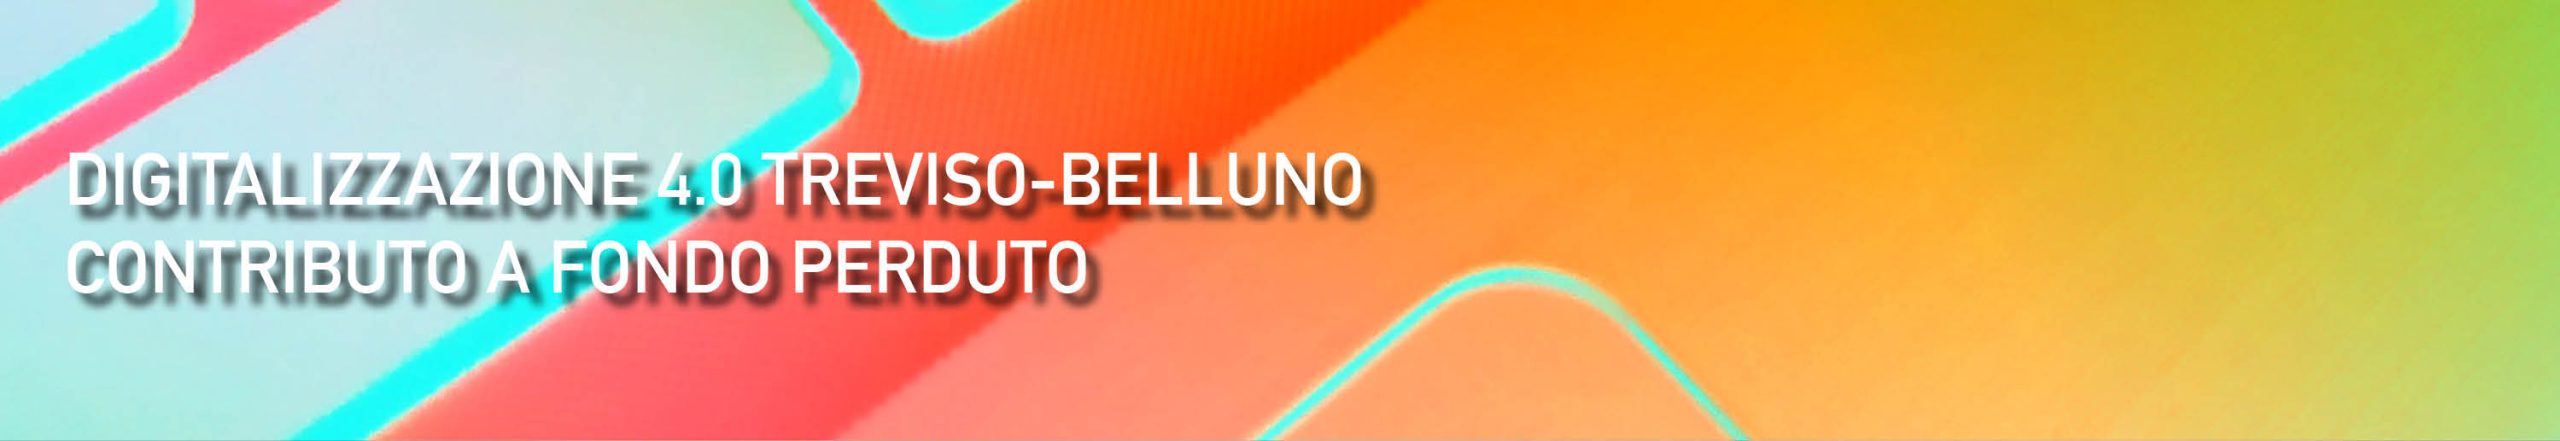 Digitalizzazione 4.0 Treviso-Belluno